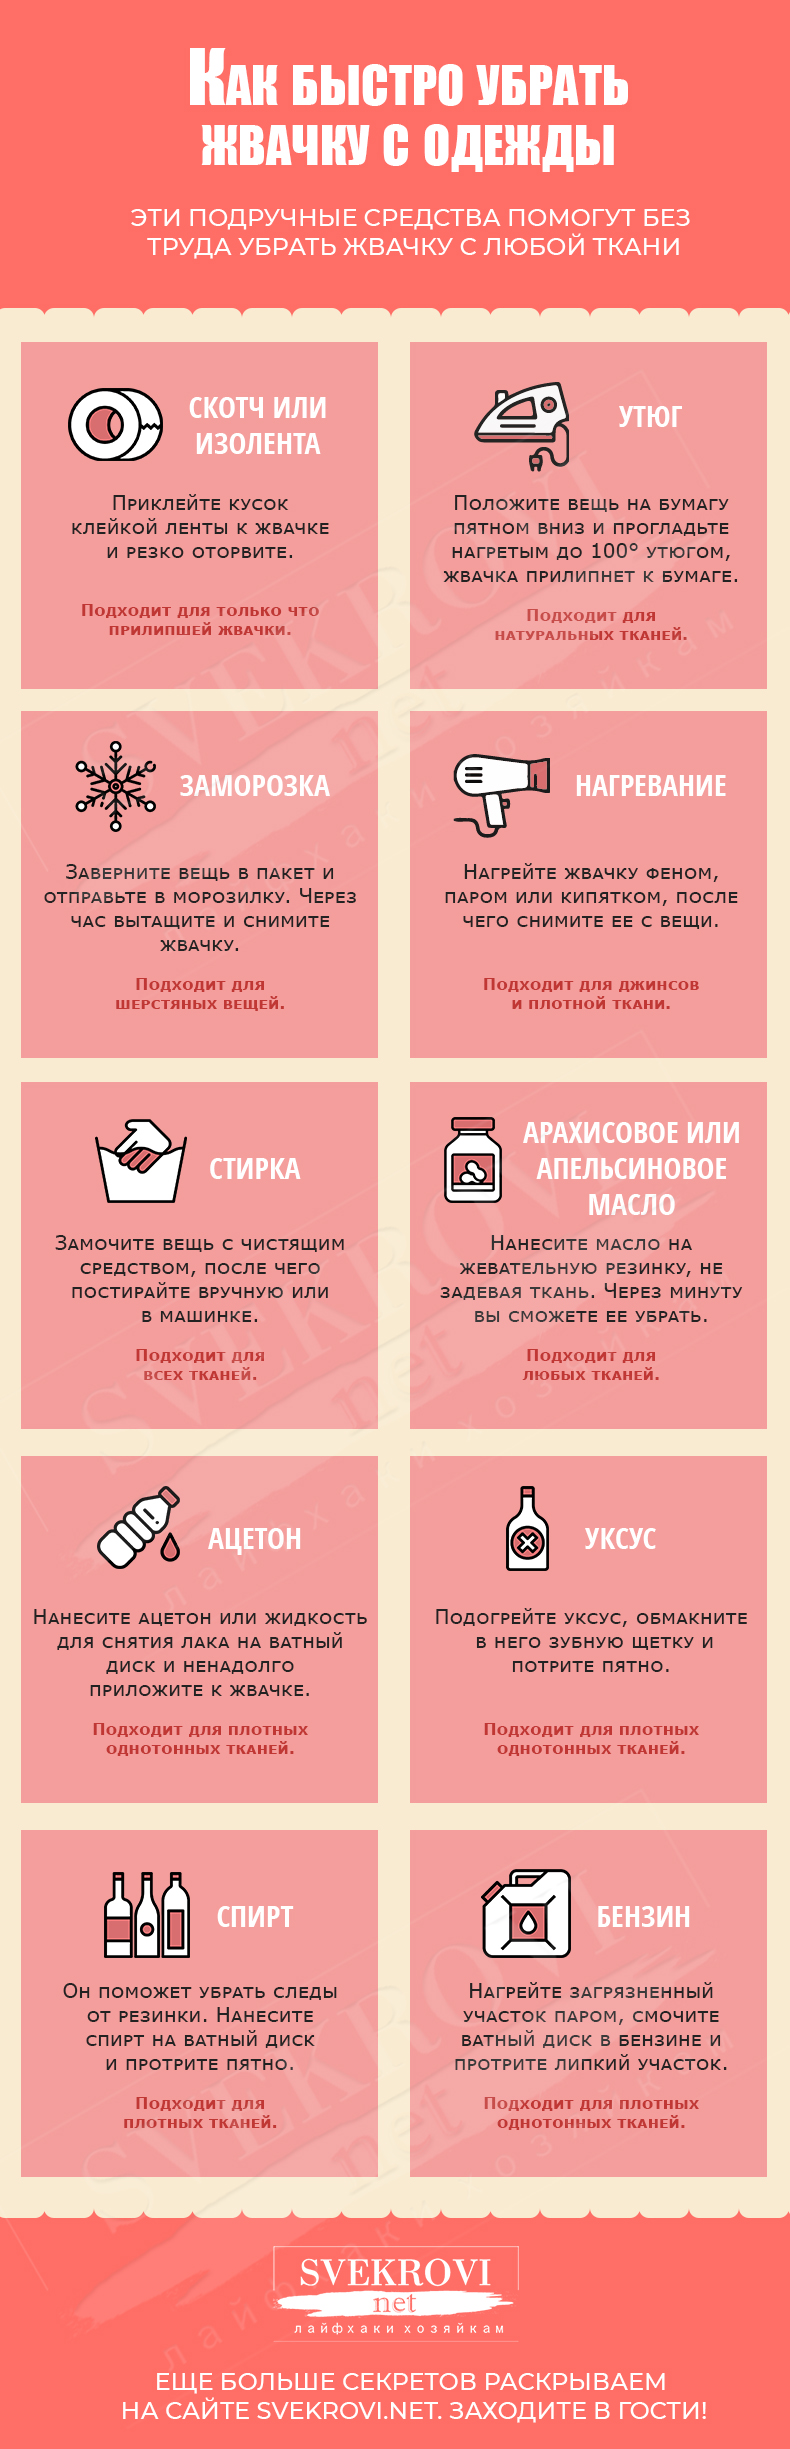 11 гениальных трюков, чтобы убрать жвачку с одежды - статьи и советы на furnishhome.ru